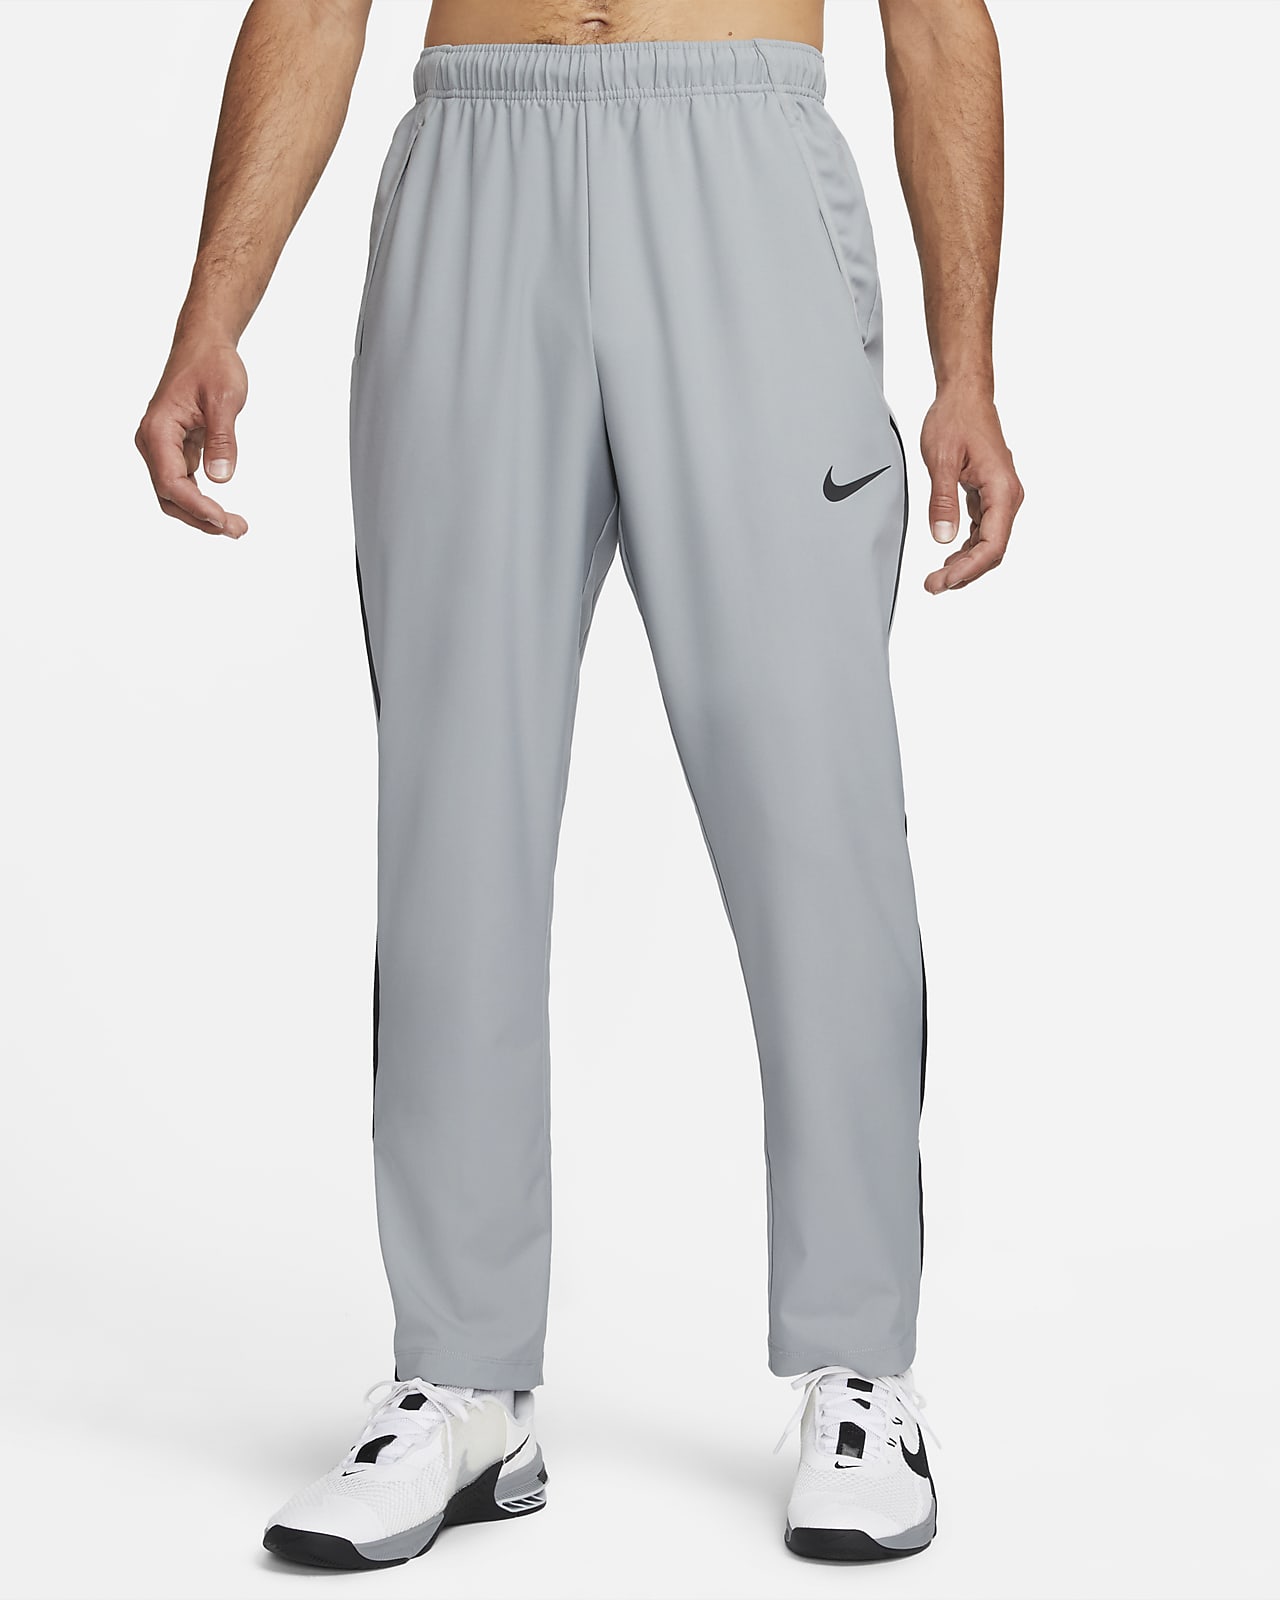 กางเกงทีมเทรนนิ่งขายาวผู้ชายแบบทอ Nike Dri-FIT